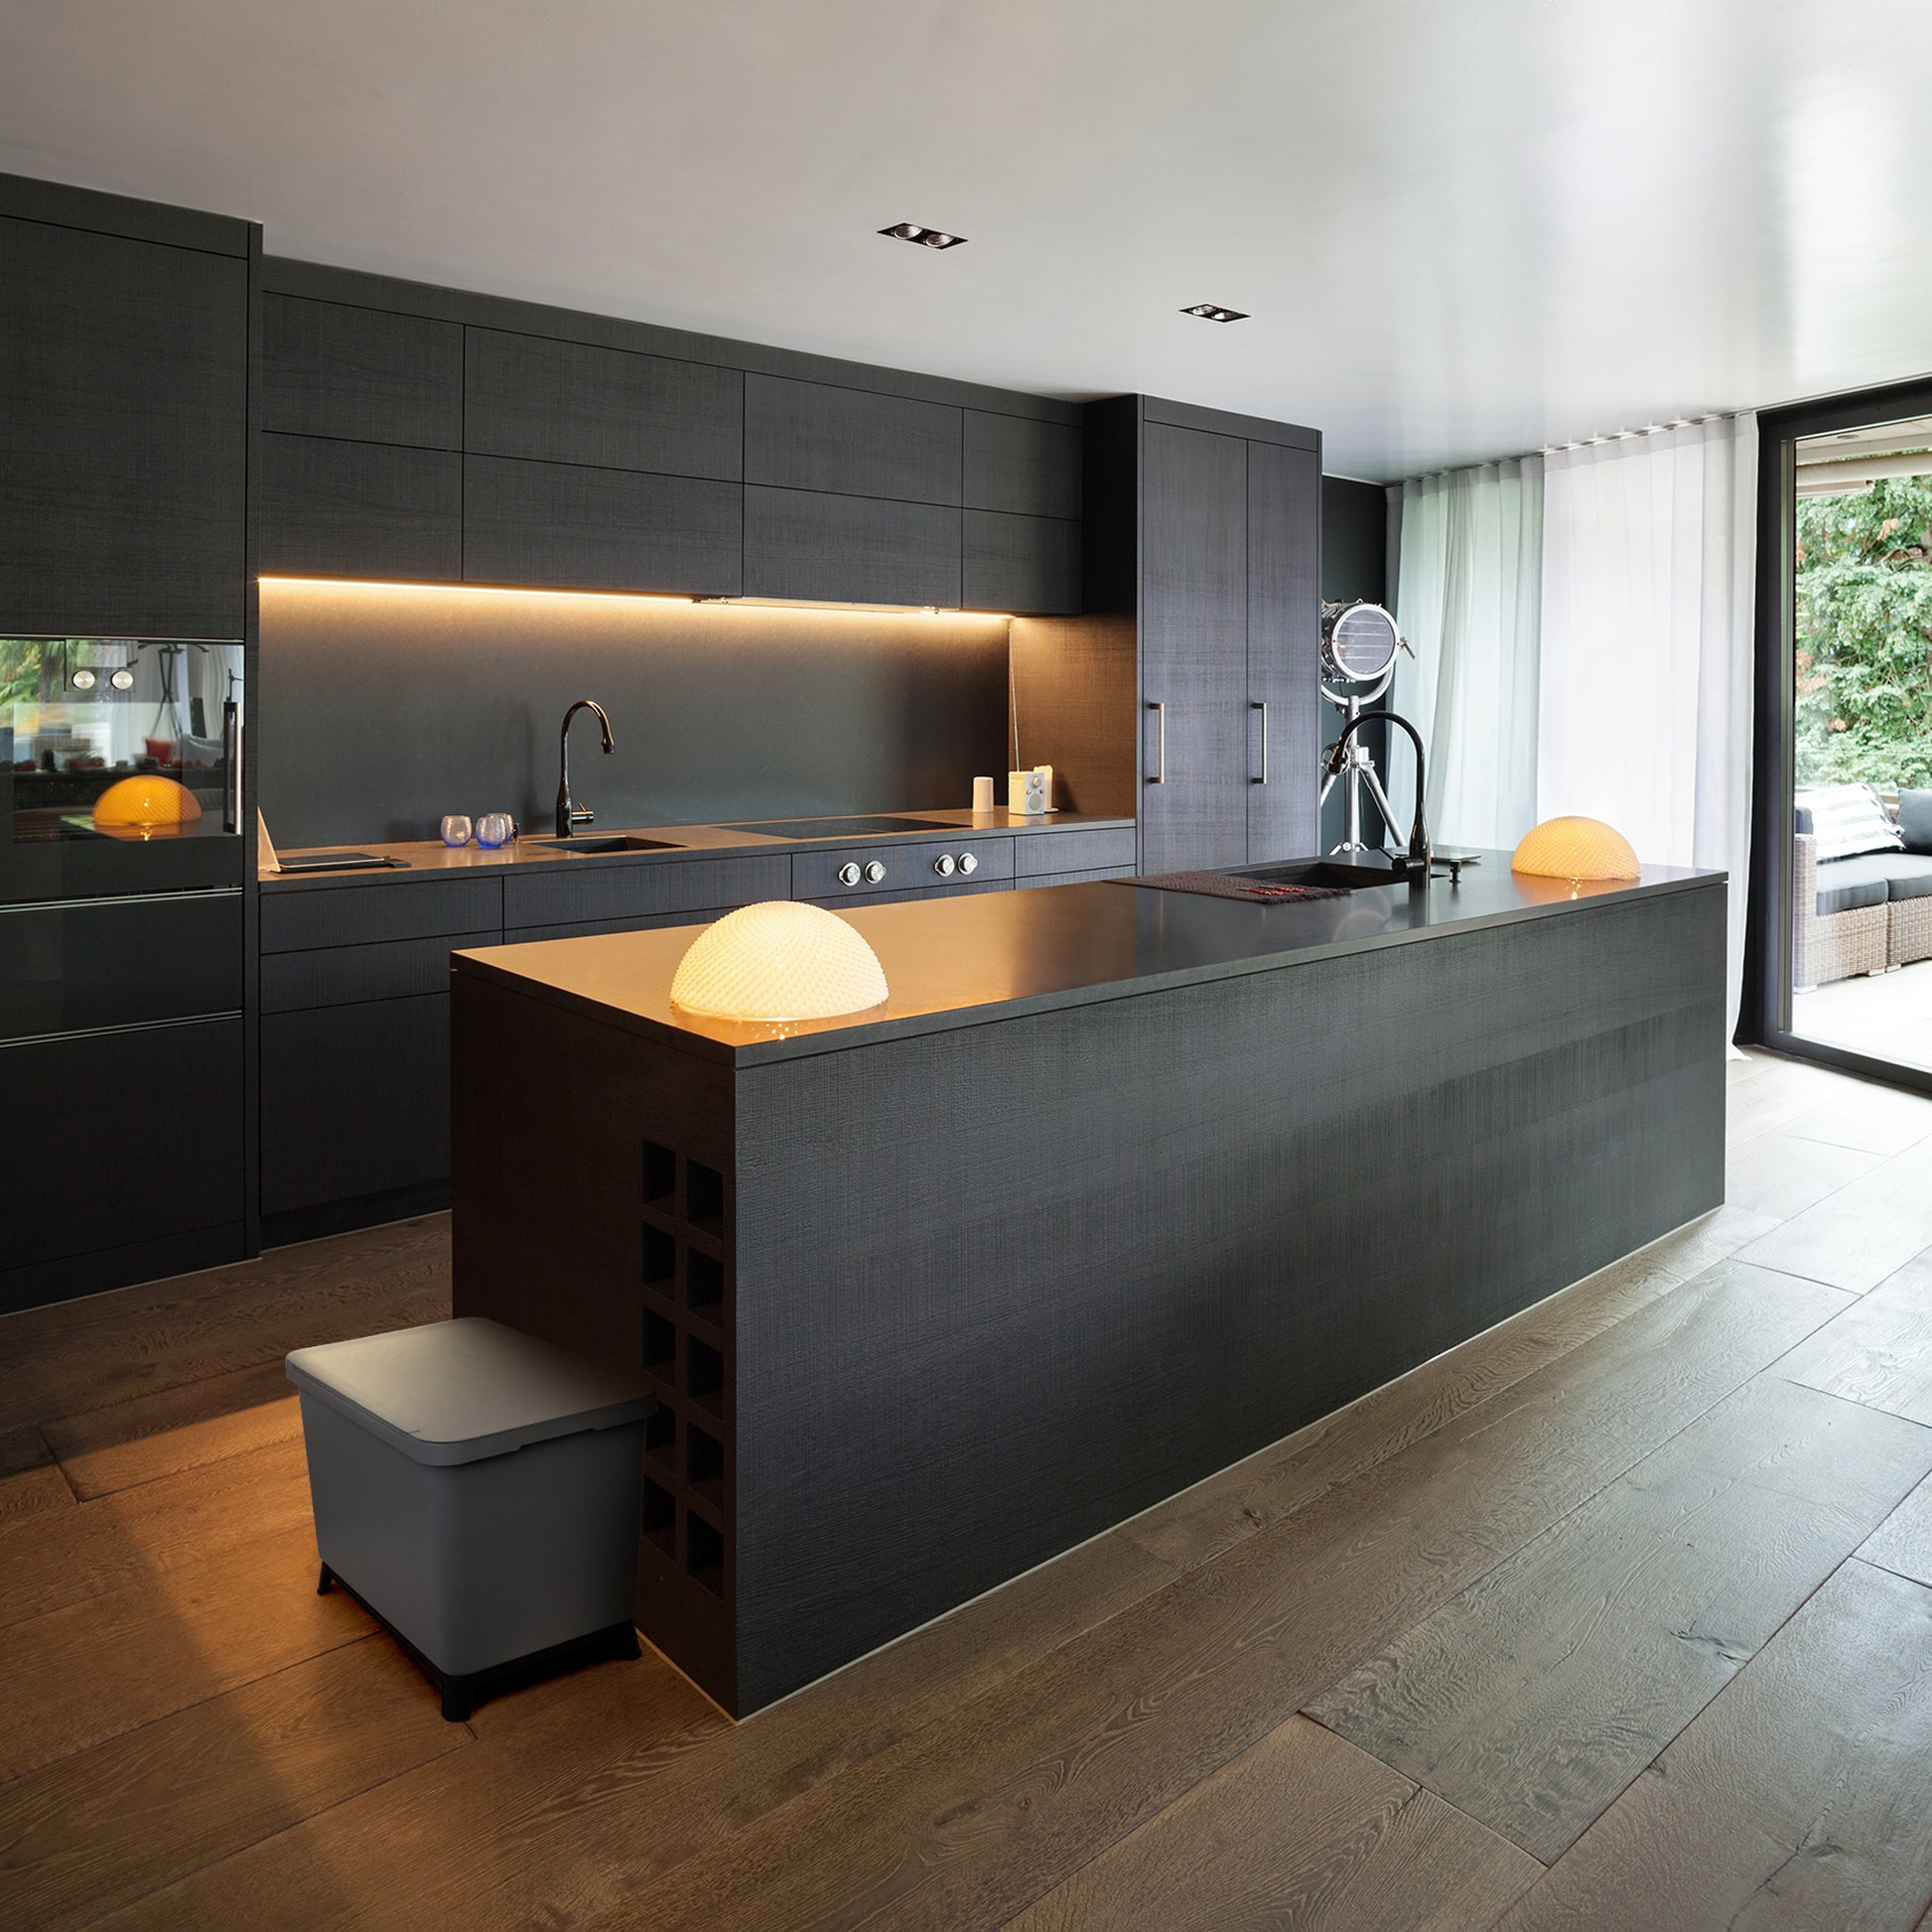 Eine moderne Küche mit einer schwarzen Insel und YourCasa® Mülleimer 2-4 Fächer [20-40L] im exklusiven Design – Mülltrennsystem mit Deckel und Fuß zur Mülltrennung.